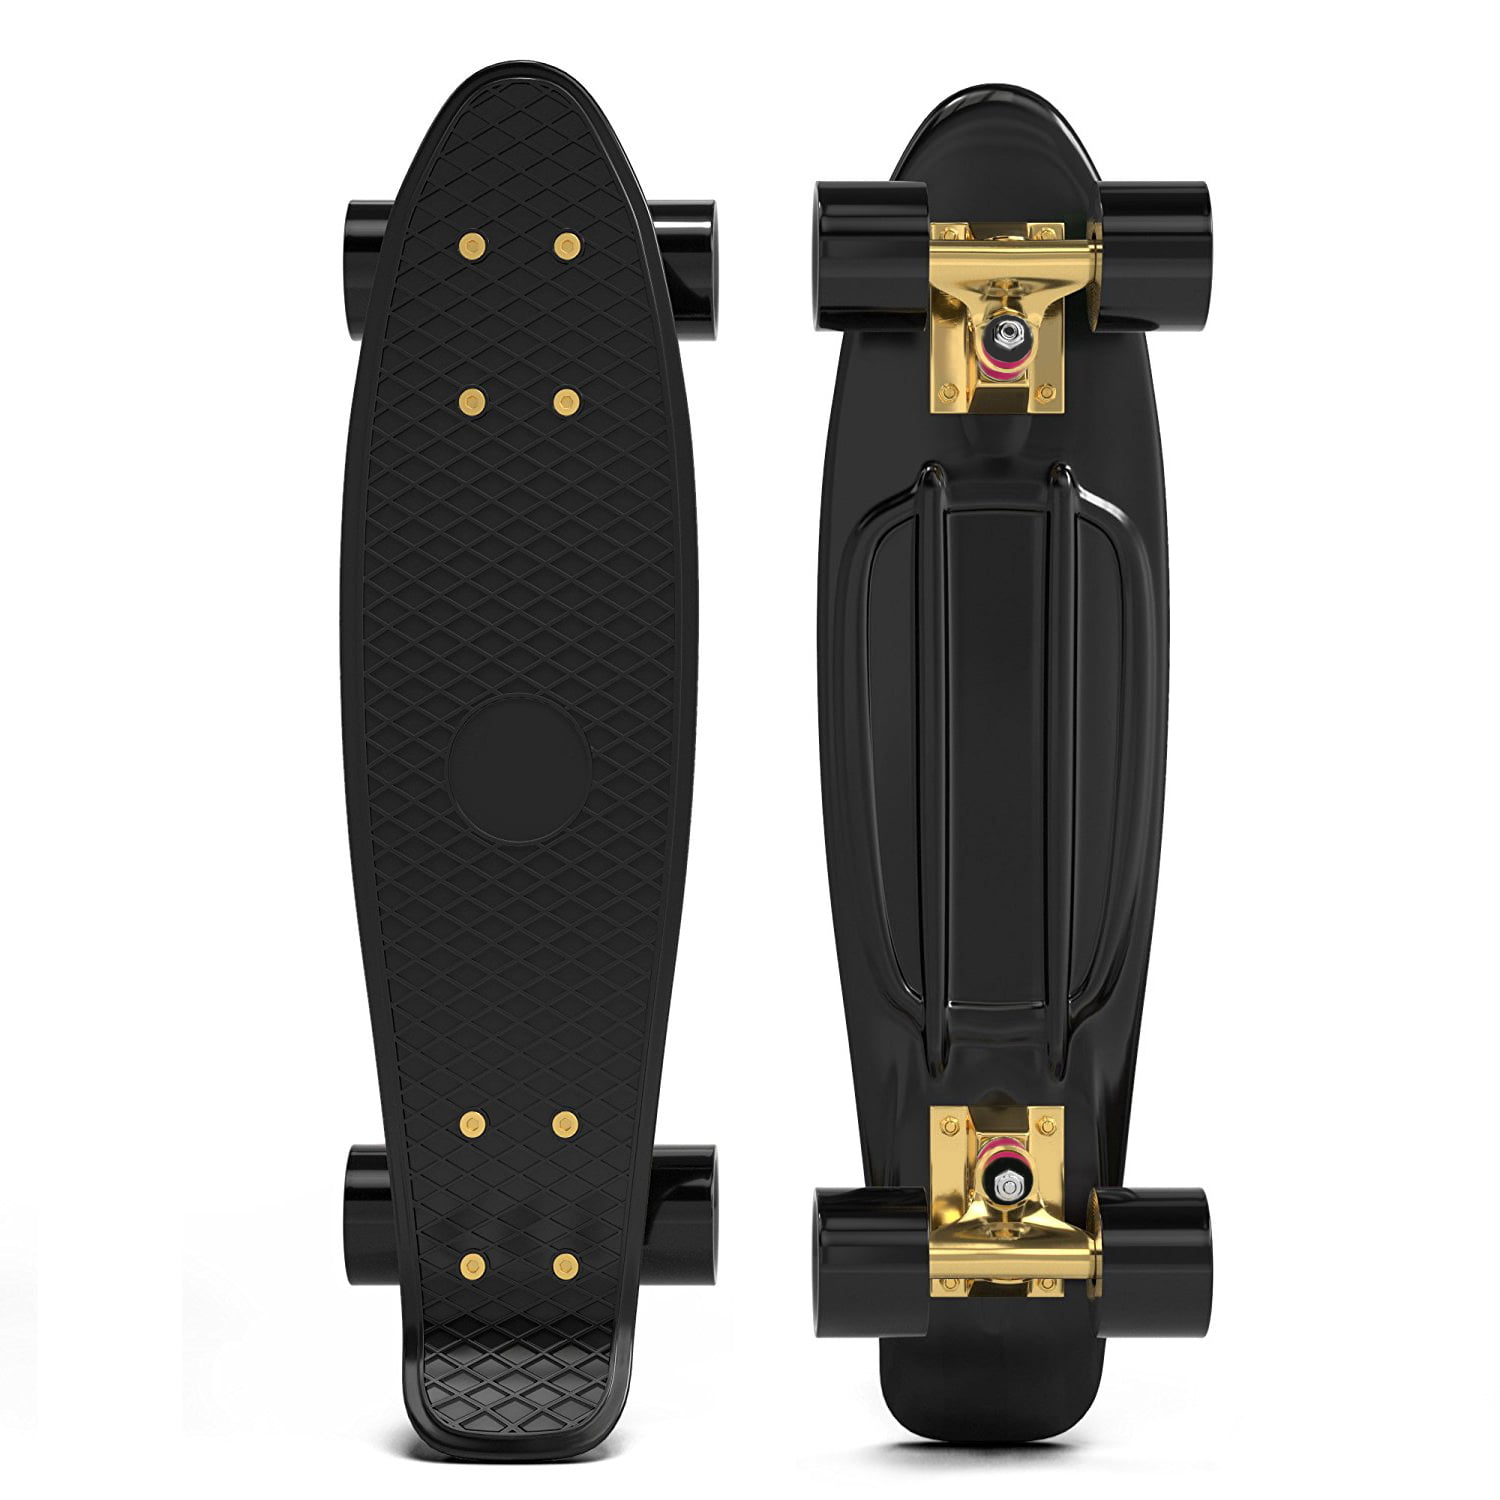 Deuba Skateboard 22 Retro Board Kickboard Cruiser Komplettboard Minicruiser Street Pennyboard LED